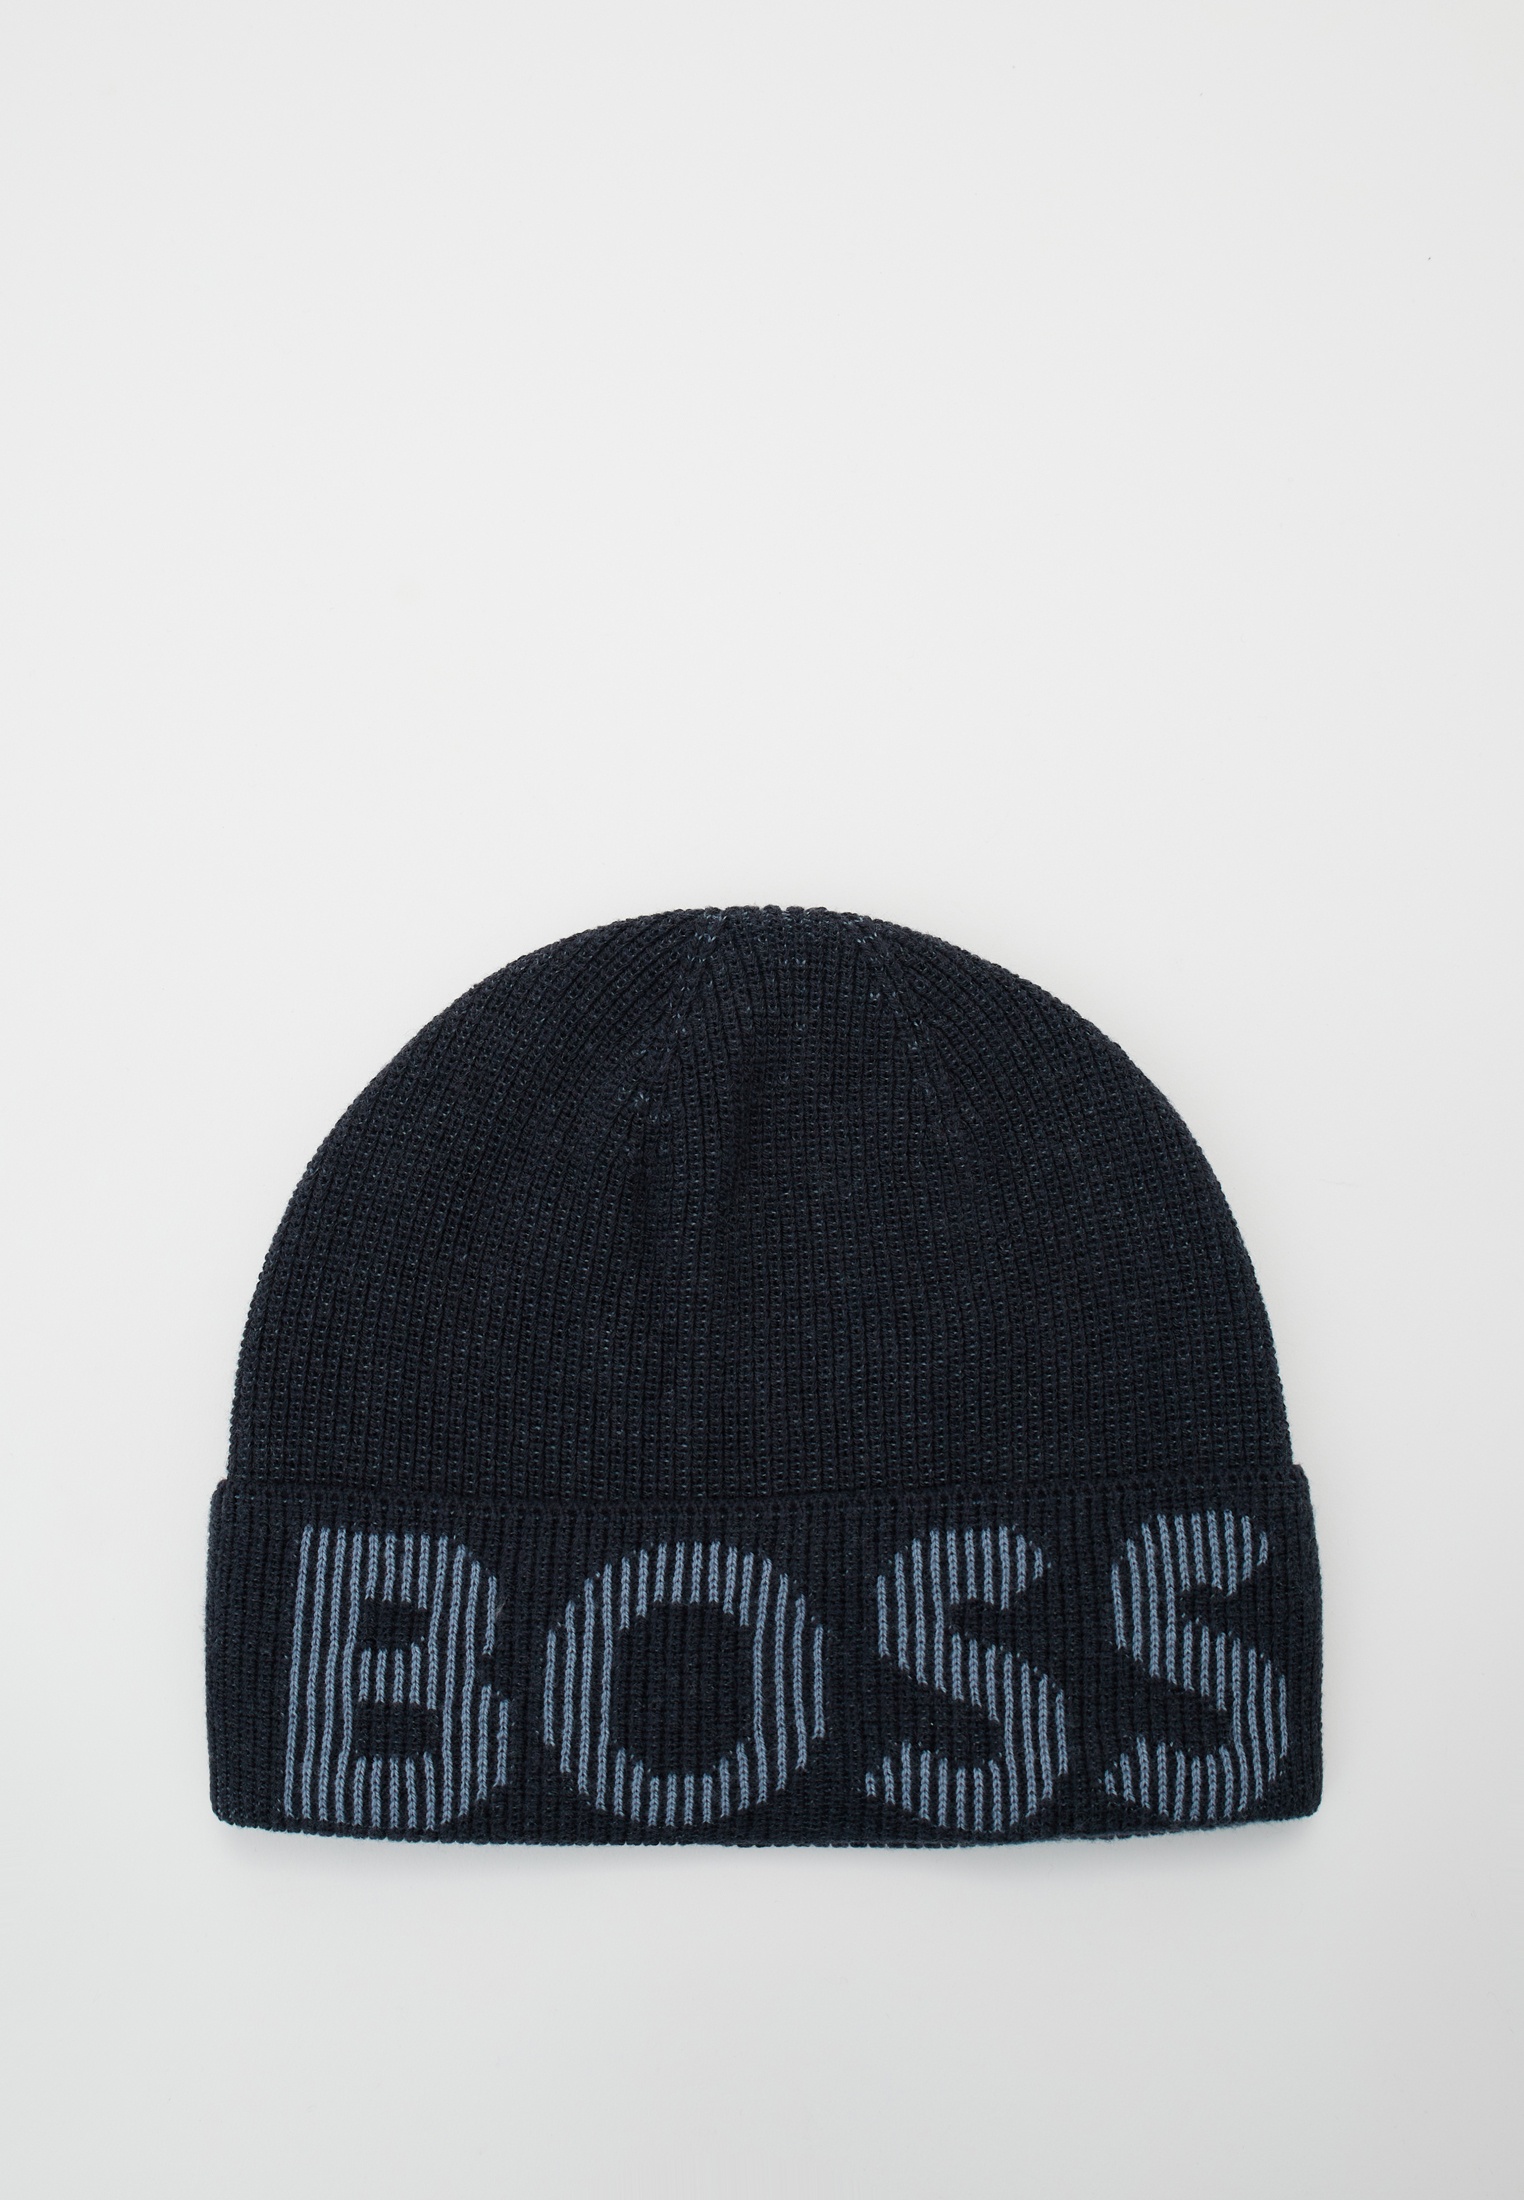 Шапка Boss (Босс) 50495296: изображение 6